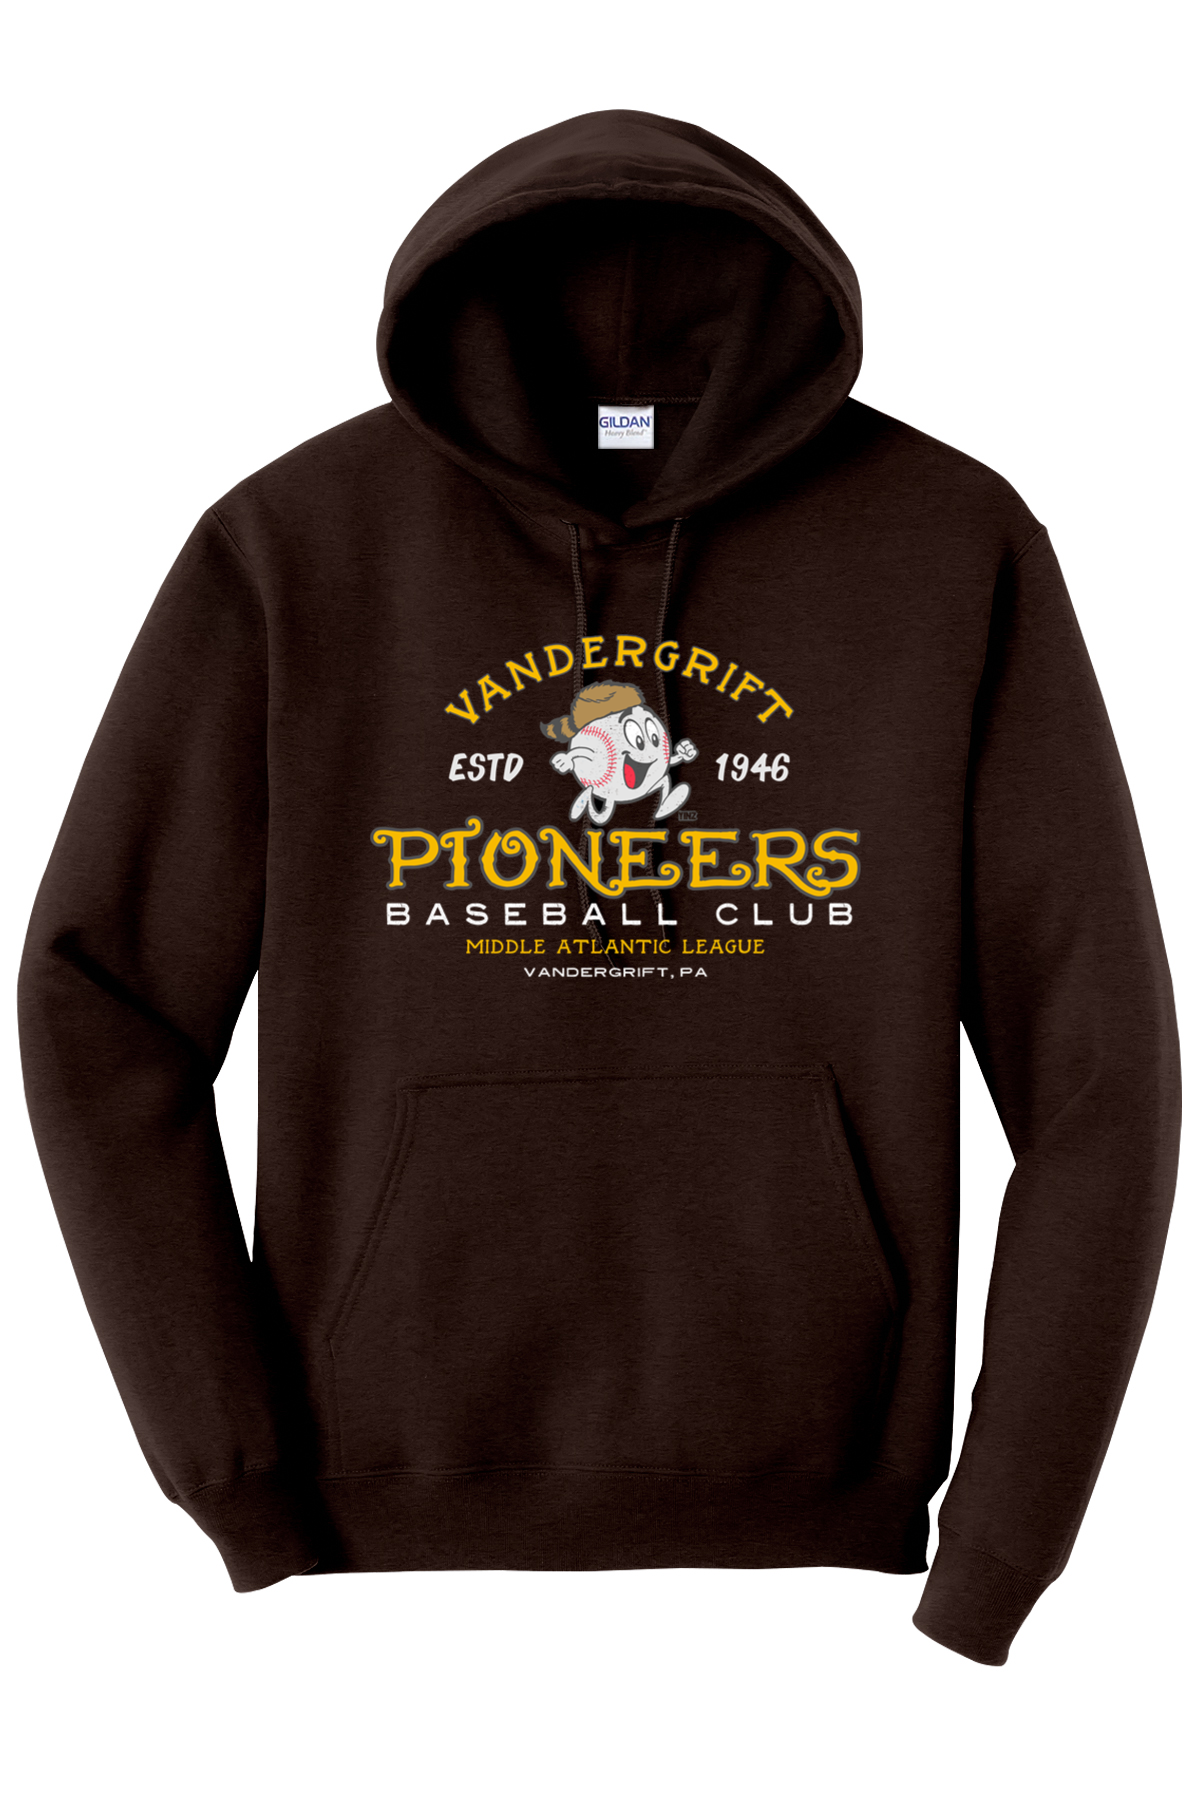 Vandergrift Pioneers Baseball Club - 1946 - Hoodie - Yinzylvania